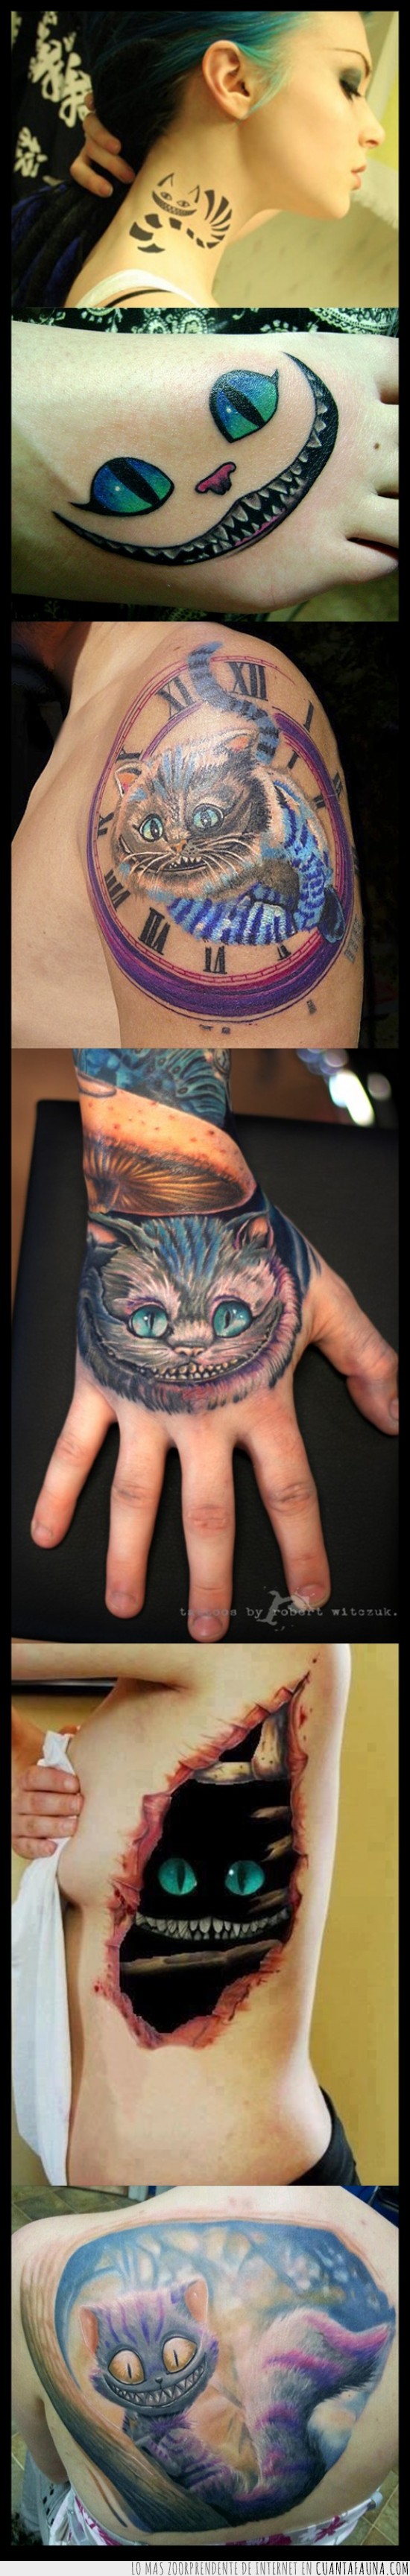 tatuajes,tattoo,Cheshire cat,gato de alicia,gatos,alicia en el pais de las maravillas